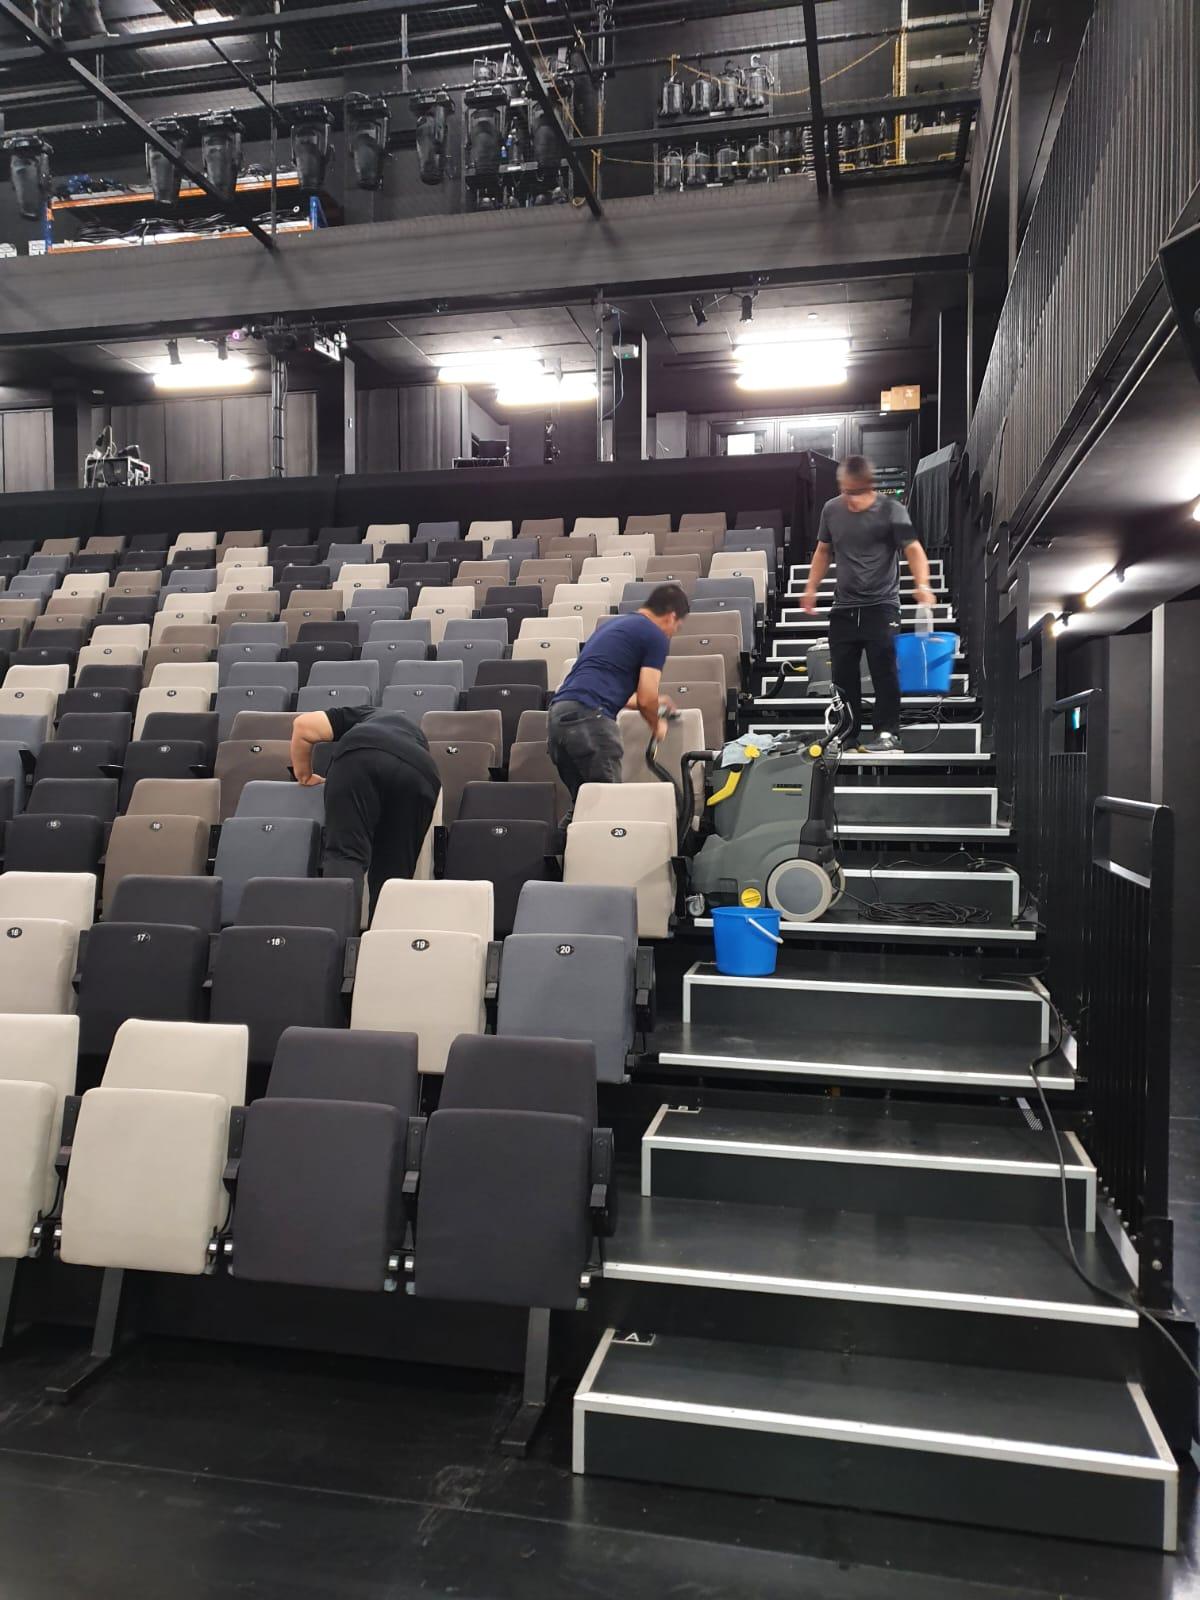 Cleaning of auditorium seats